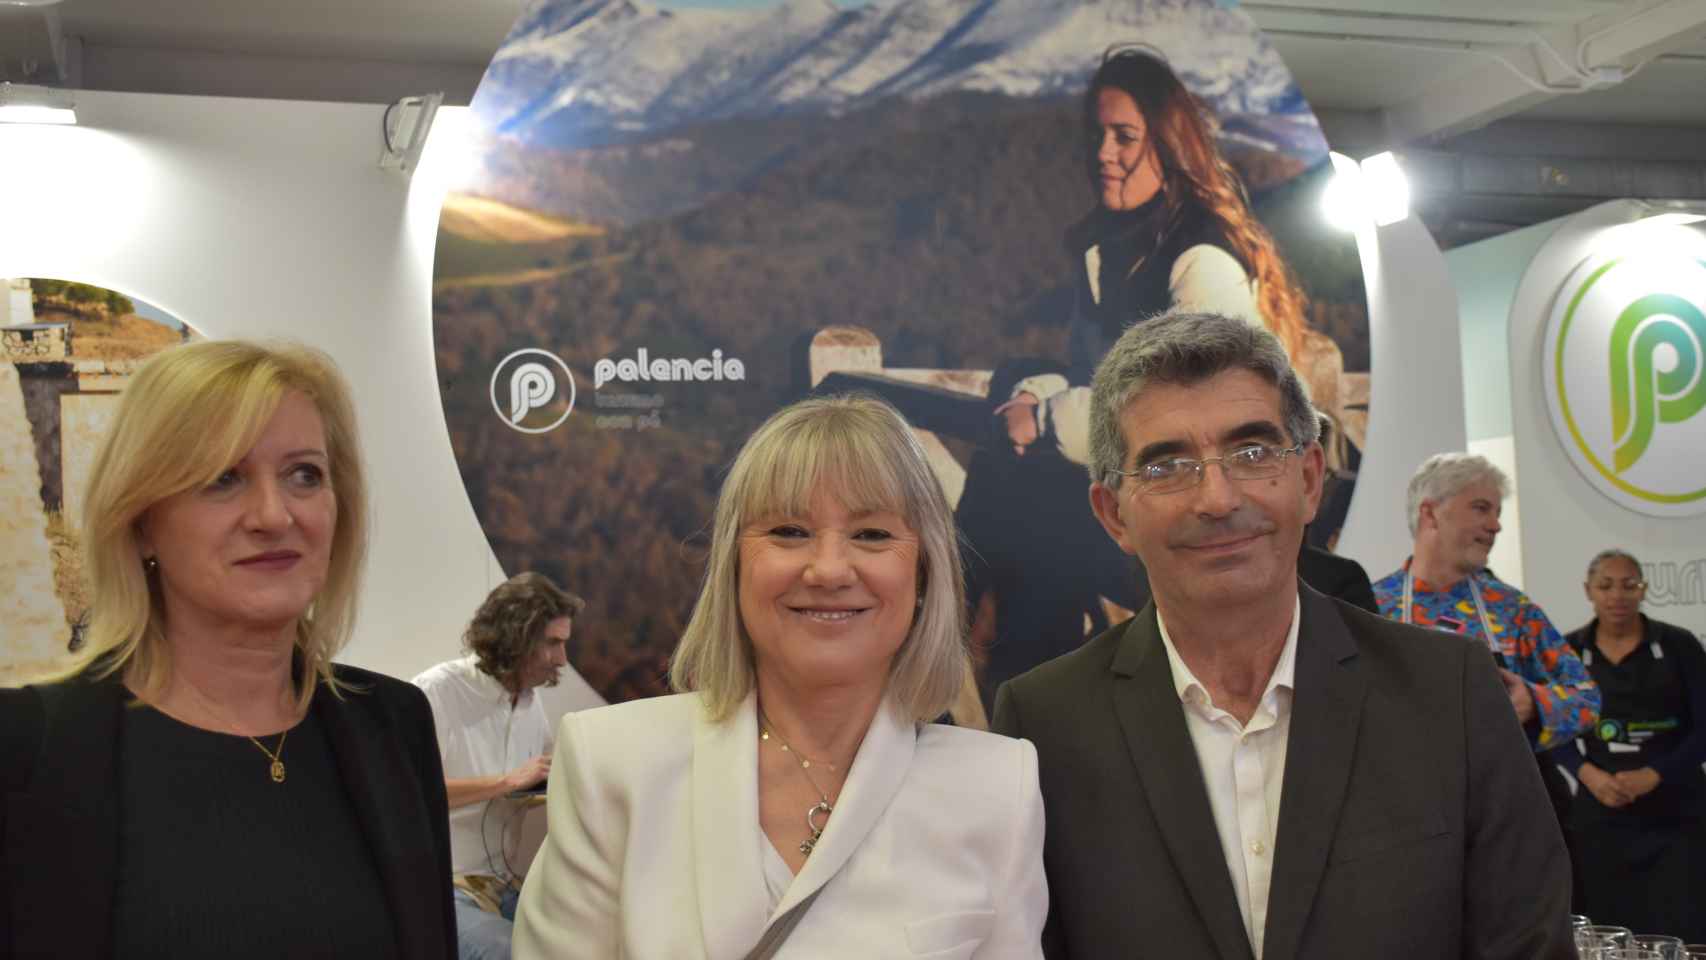 La alcaldesa de Aguilar de Campoo, María José Ortega (centro), junto a dos represantes del Ayuntamiento posa en Intur